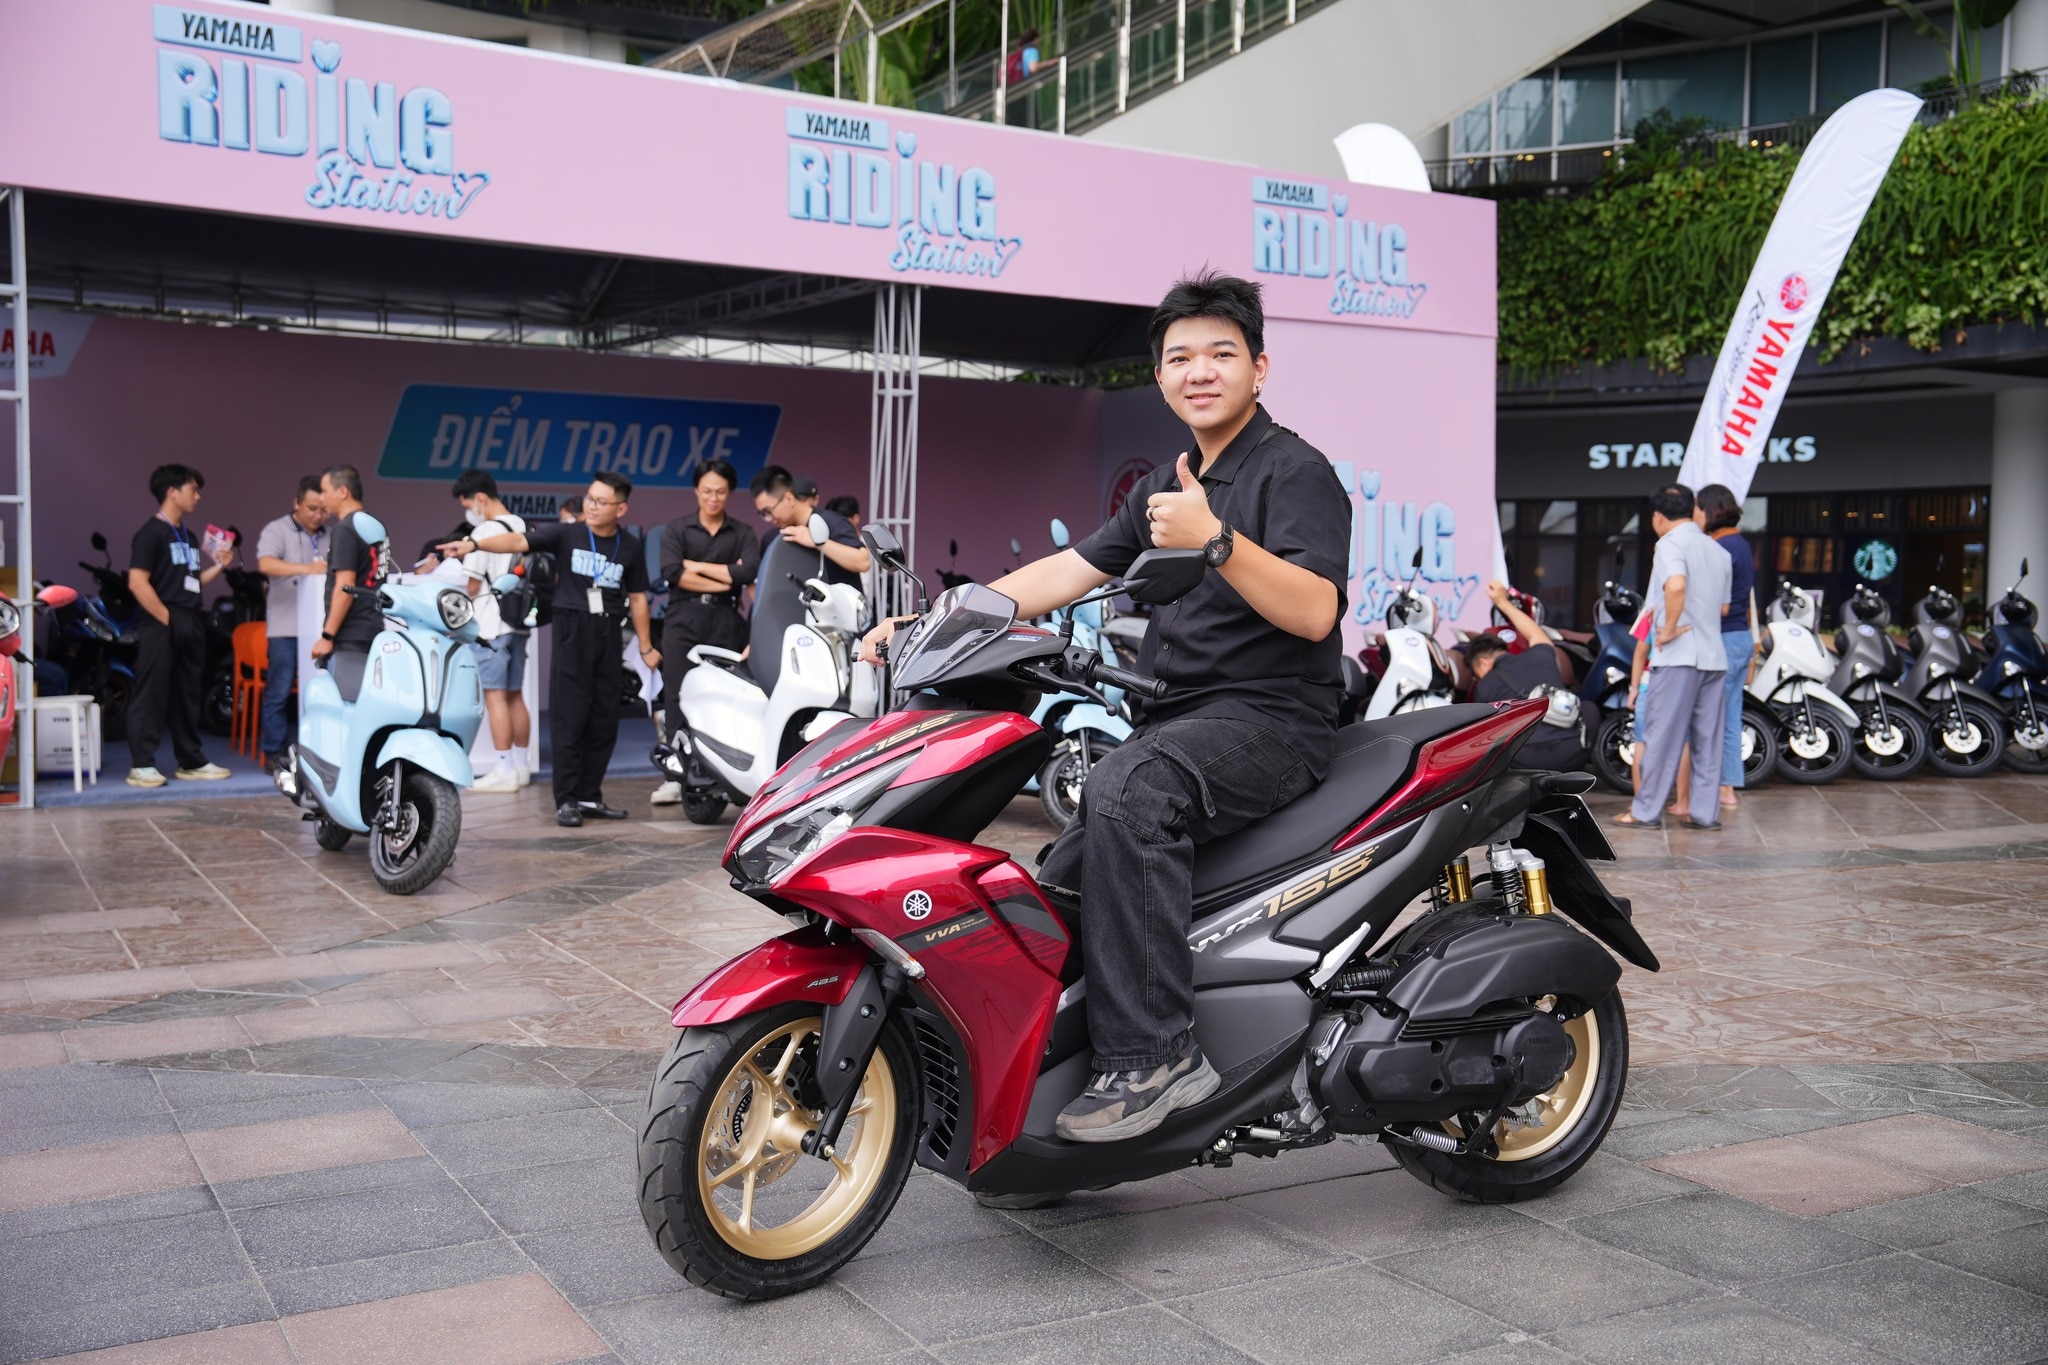 Yamaha Riding Station 'cháy hàng' - ghi nhận hàng ngàn đăng ký mượn xe- Ảnh 3.